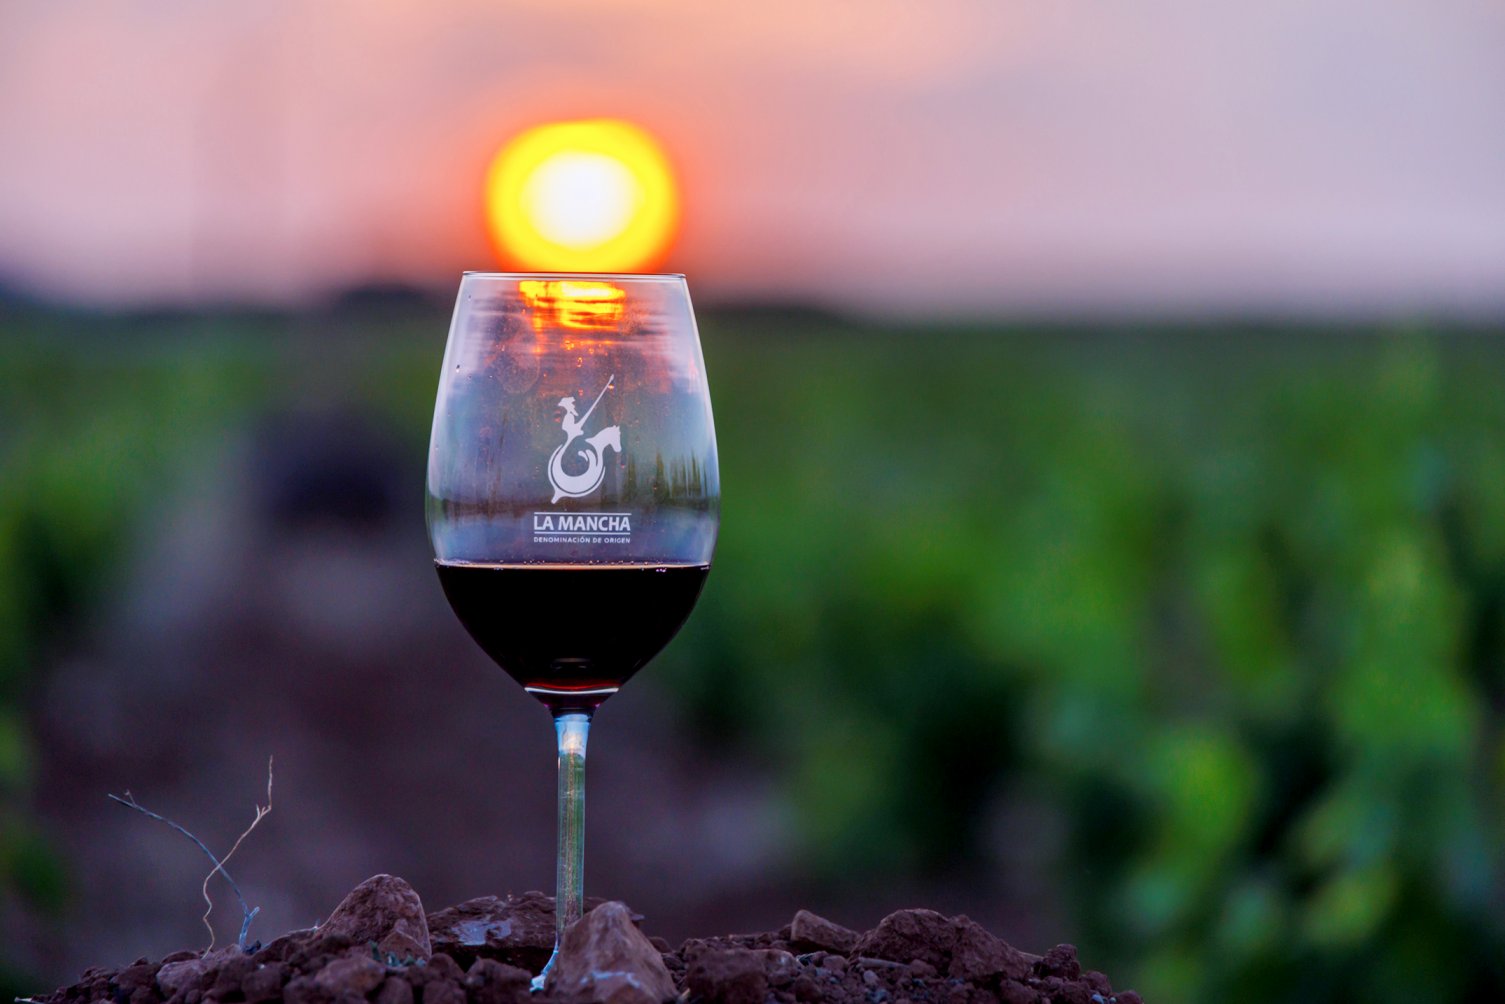 La trazabilidad de los vinos y la garantía de calidad son dos de los pilares Denominación de Origen La Mancha